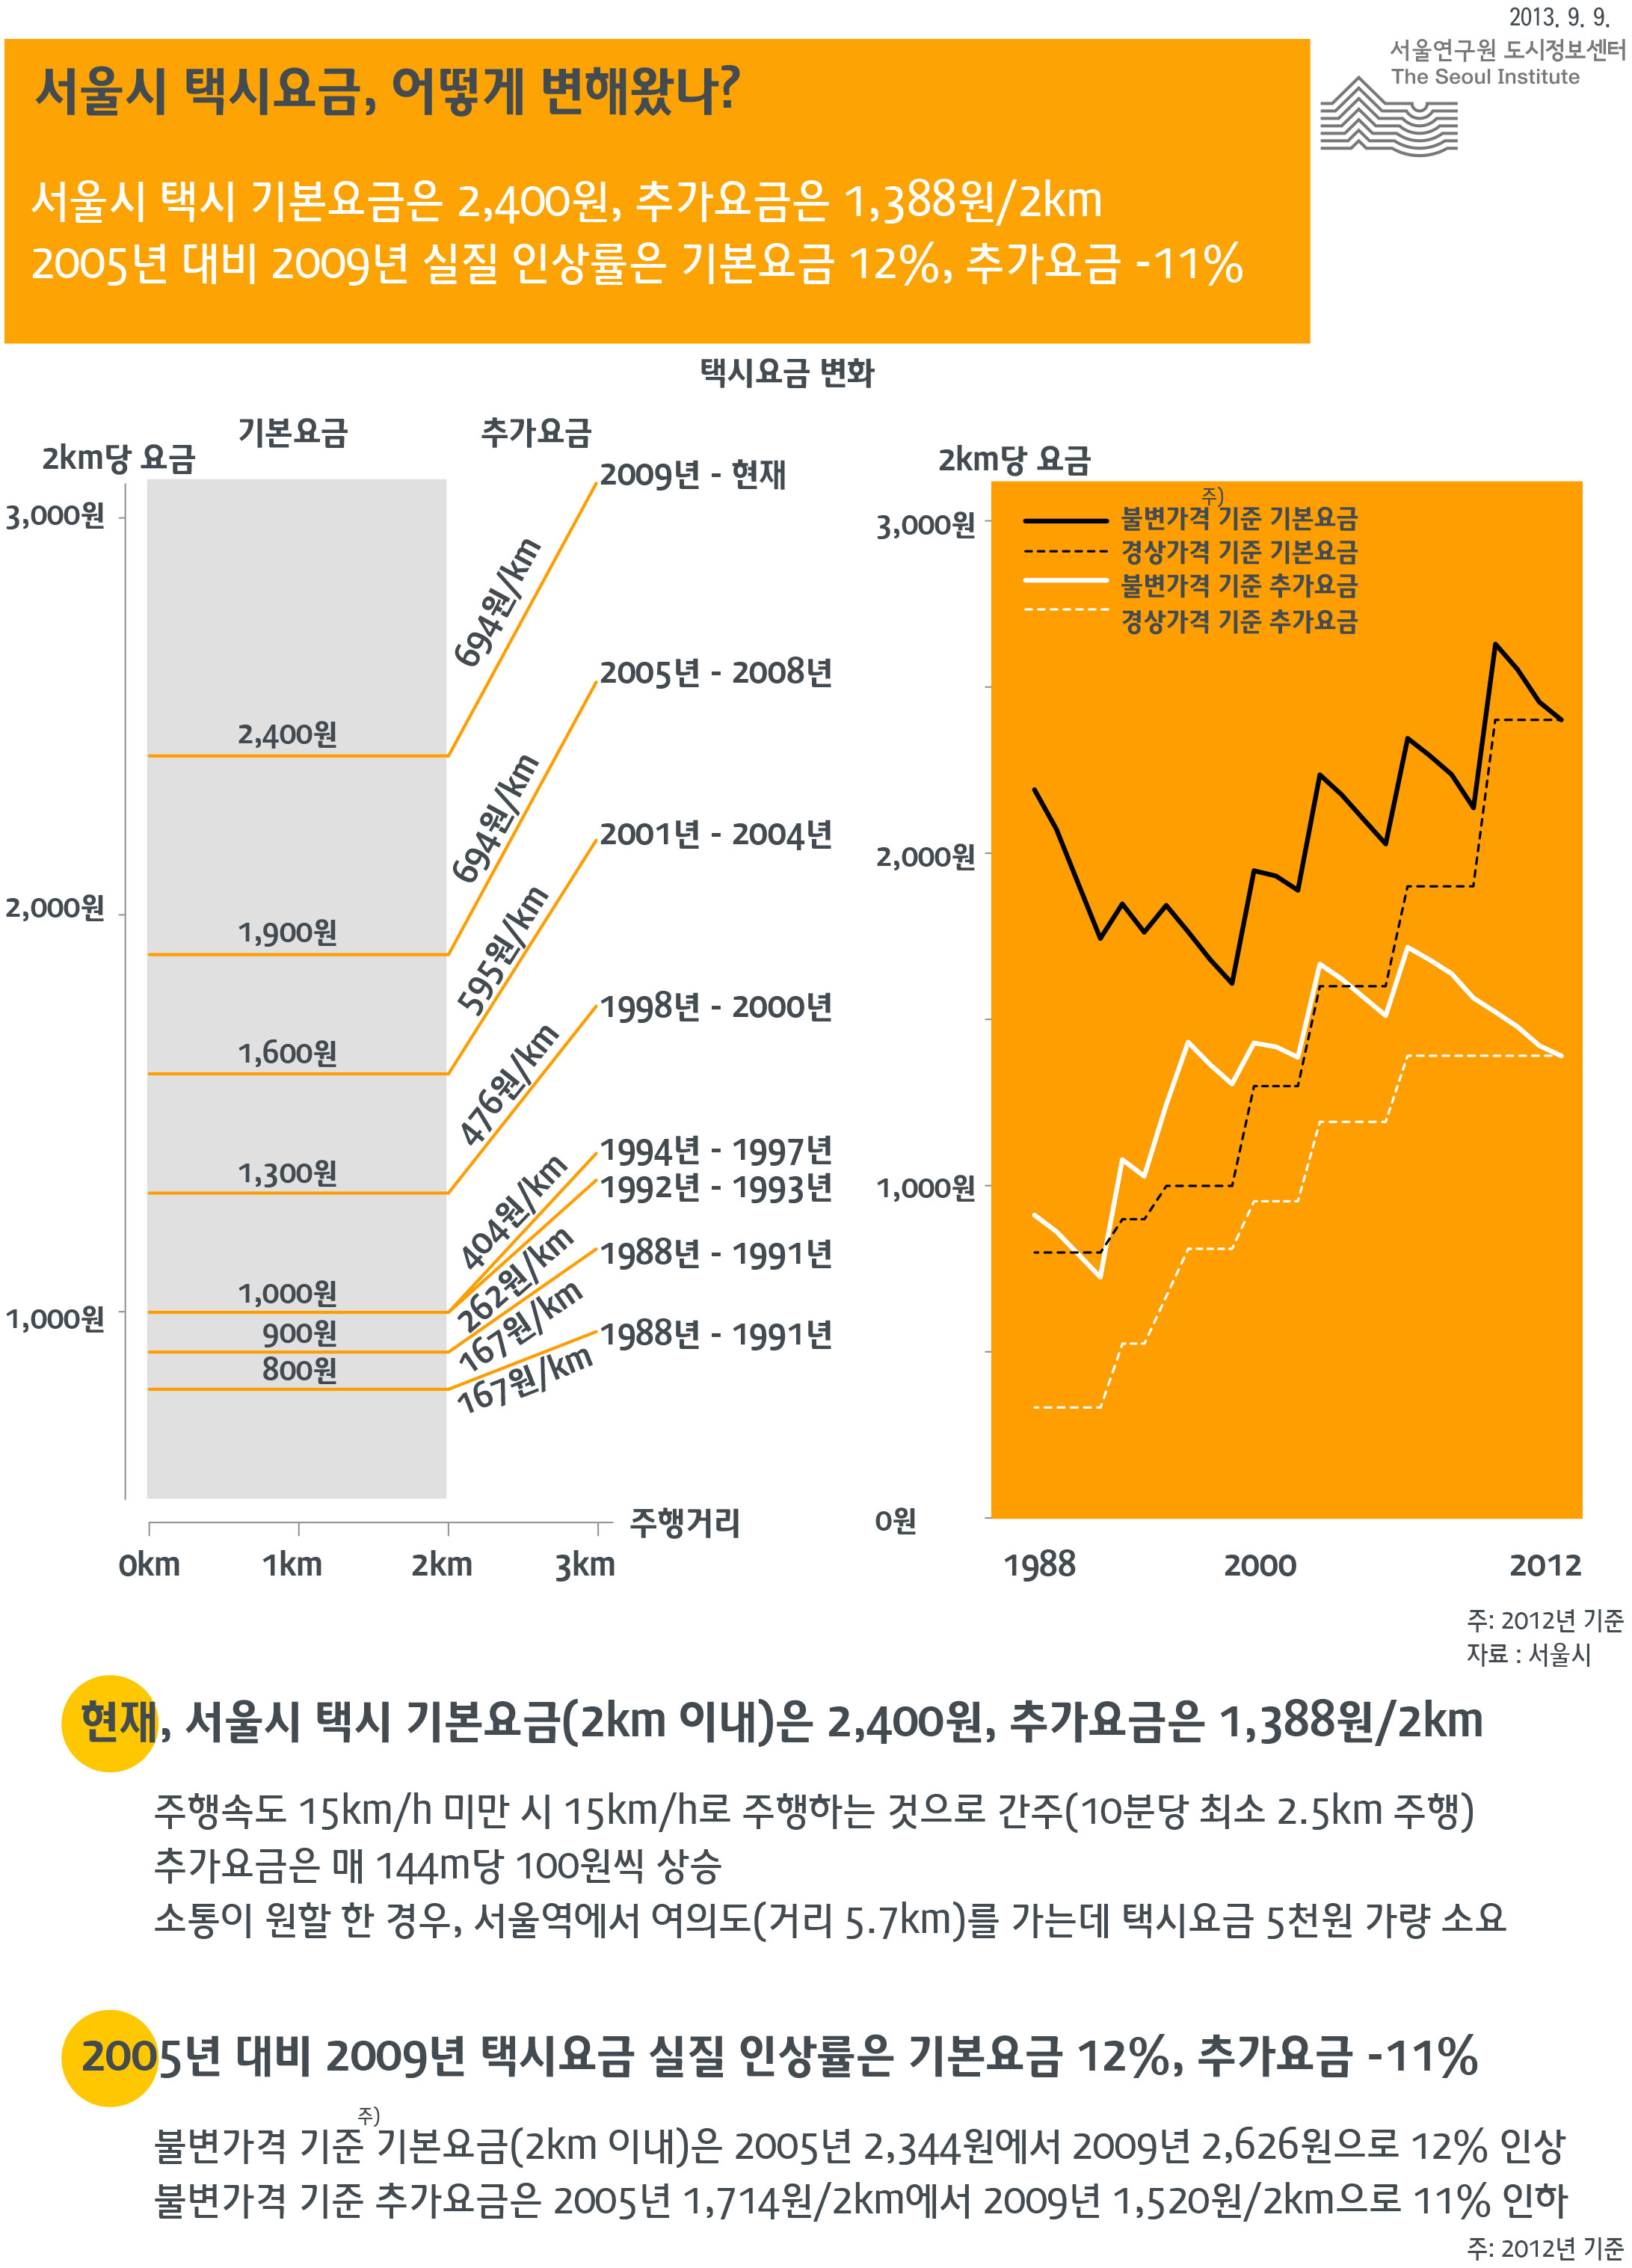 서울시 택시요금, 어떻게 변해왔나? 서울인포그래픽스 2013년 9월 6월 현재, 서울시 택시 기본요금(2㎞ 이내)은 2,400원, 추가요금은 1,388원/2㎞, 2005년 대비 2009년 택시요금 실질 인상률은 기본요금 12%, 추가요금 –11%으로 정리될 수 있습니다. 인포그래픽으로 제공되는 그래픽은 하단에 표로 자세히 제공됩니다.